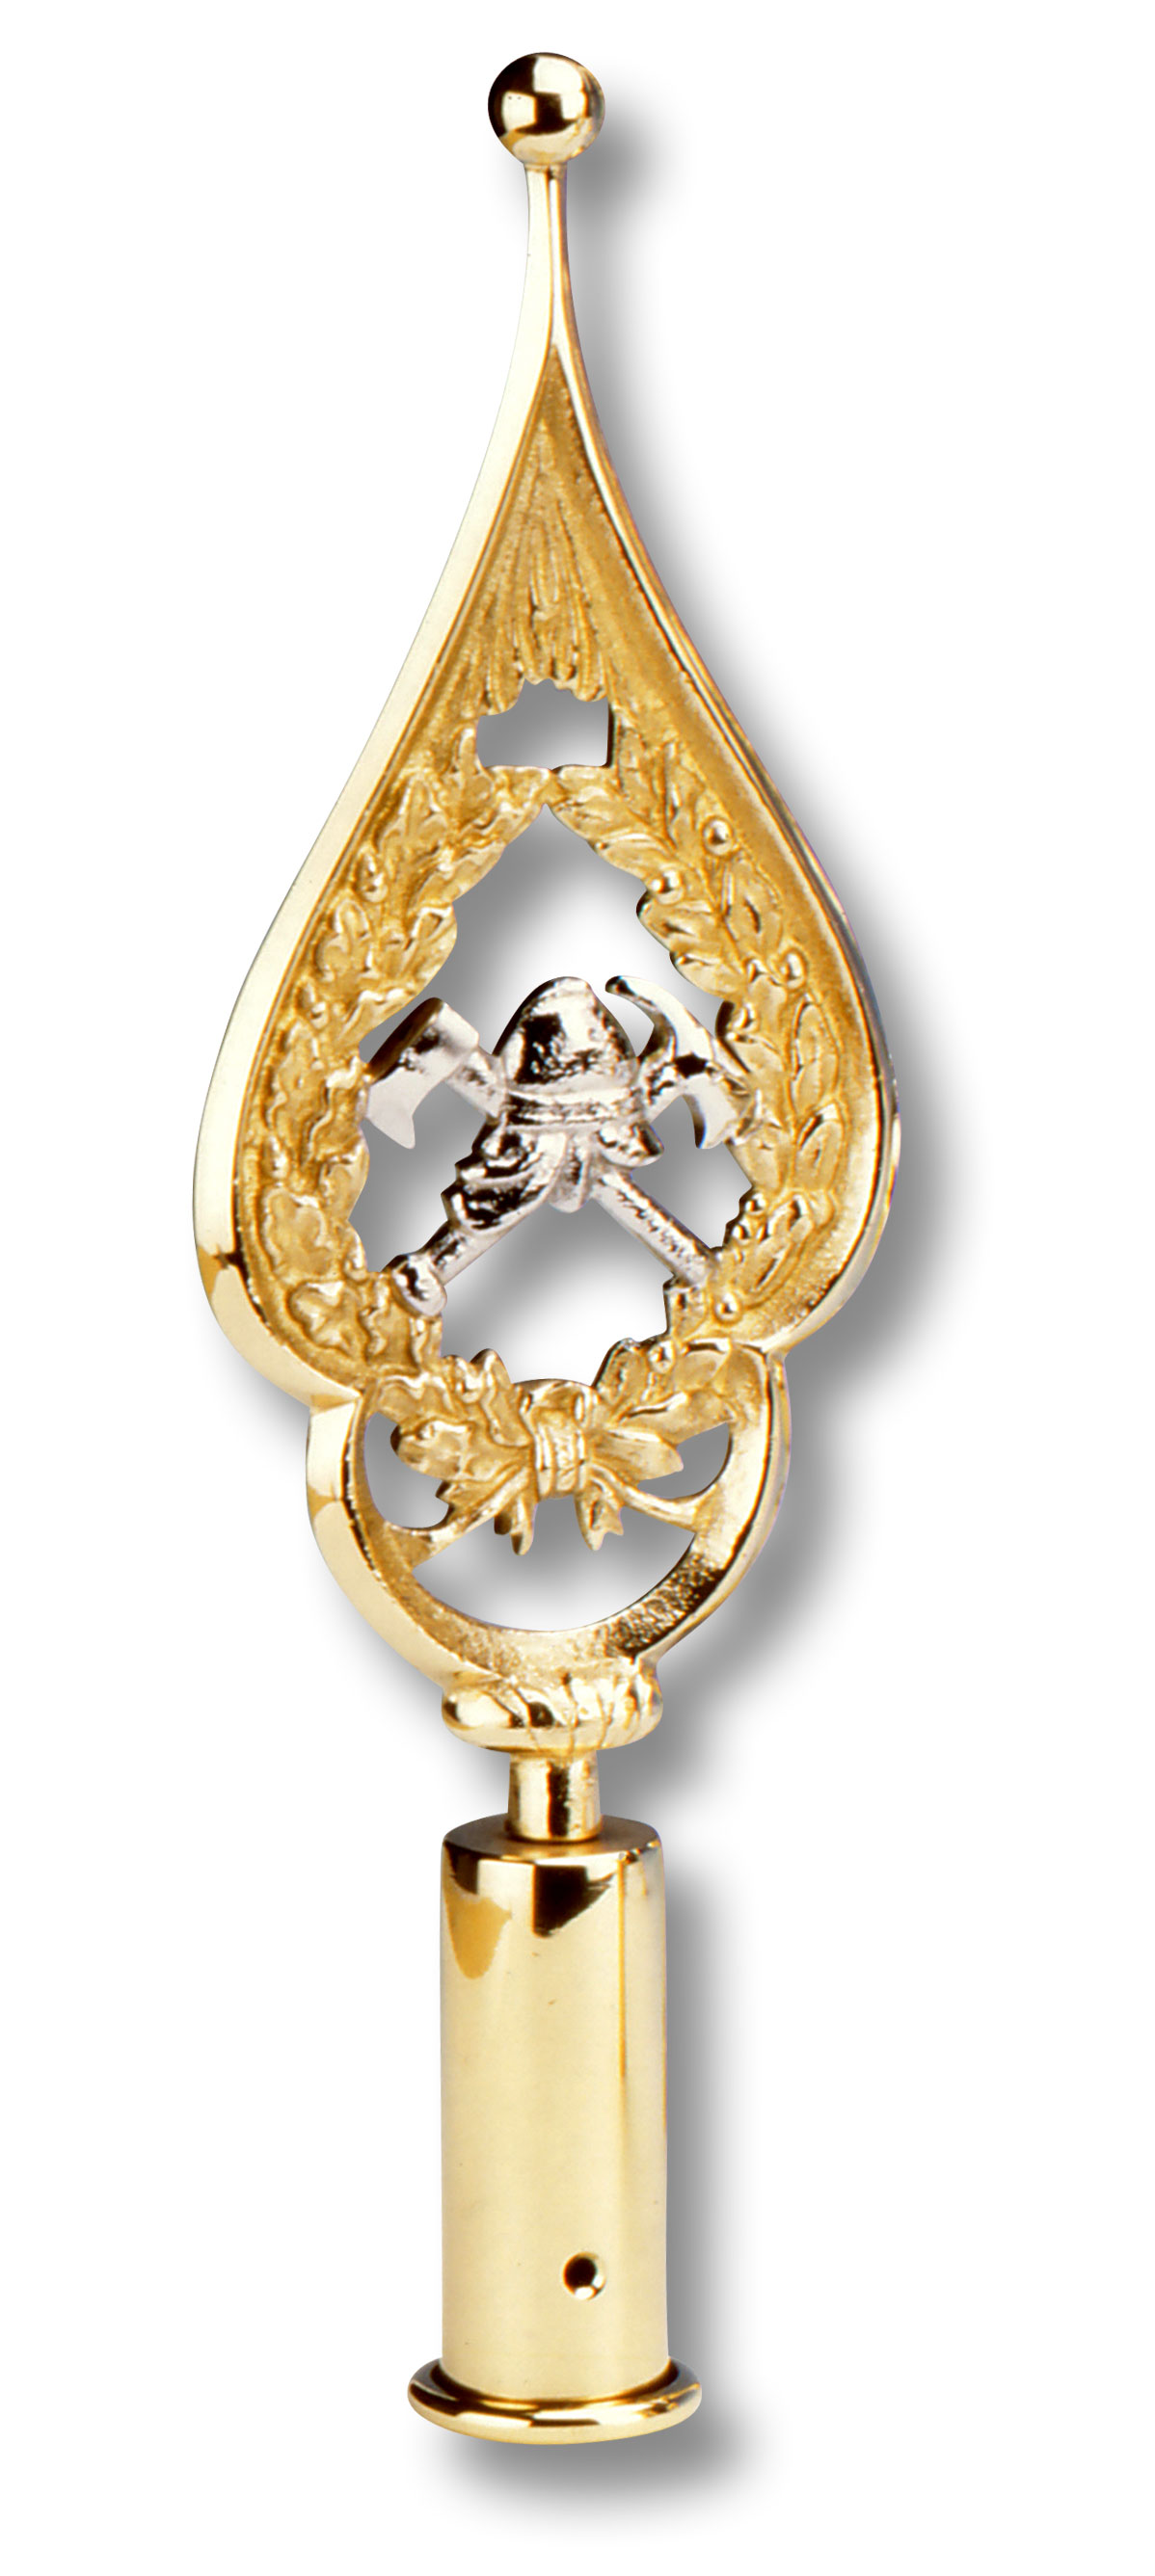 Mit goldenem Rahmen und feiner Eichenlaubverzierung. Motiv mit Helm, Beil und Flamme in Silber